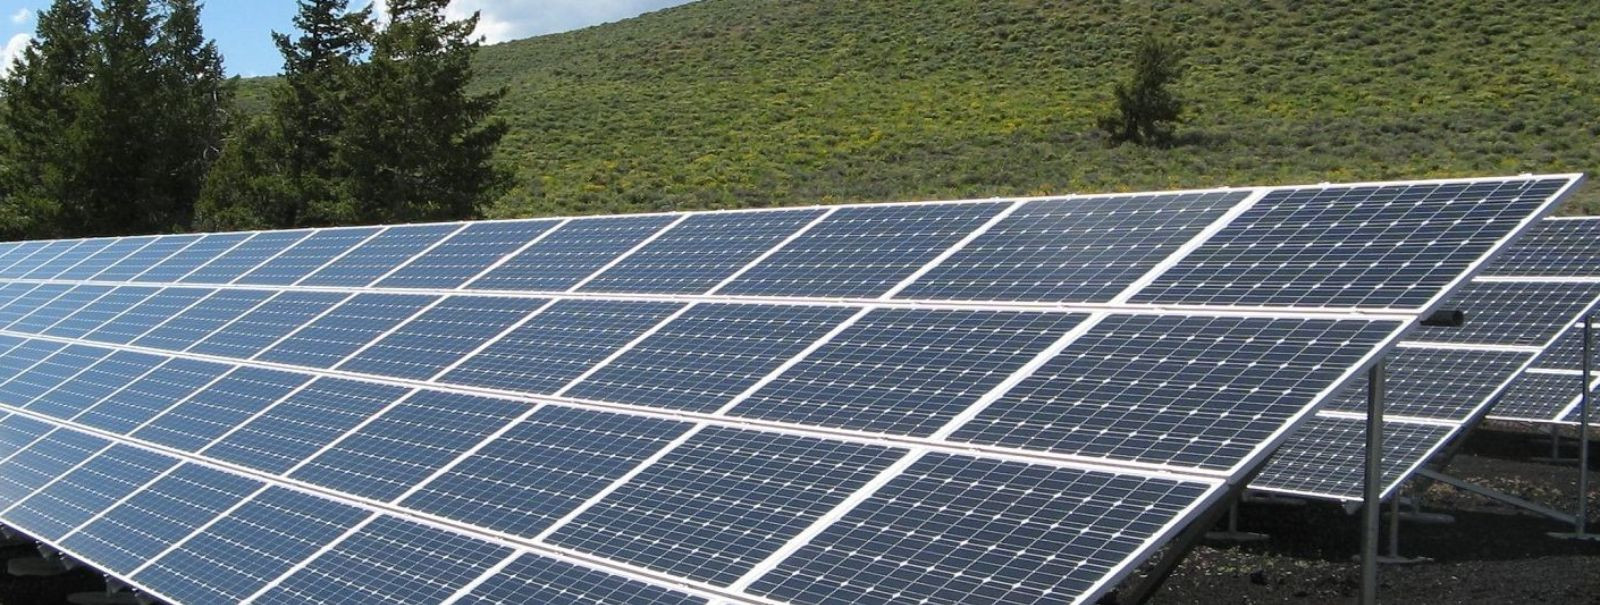 Meie ettevõte, Taastuvenergia pakub parimat päikesepaneelide valikut Eestis. Esindame maailma suurimat päikesepaneelide tootjat - Q CELLS. Q CELLS on 20-aastase